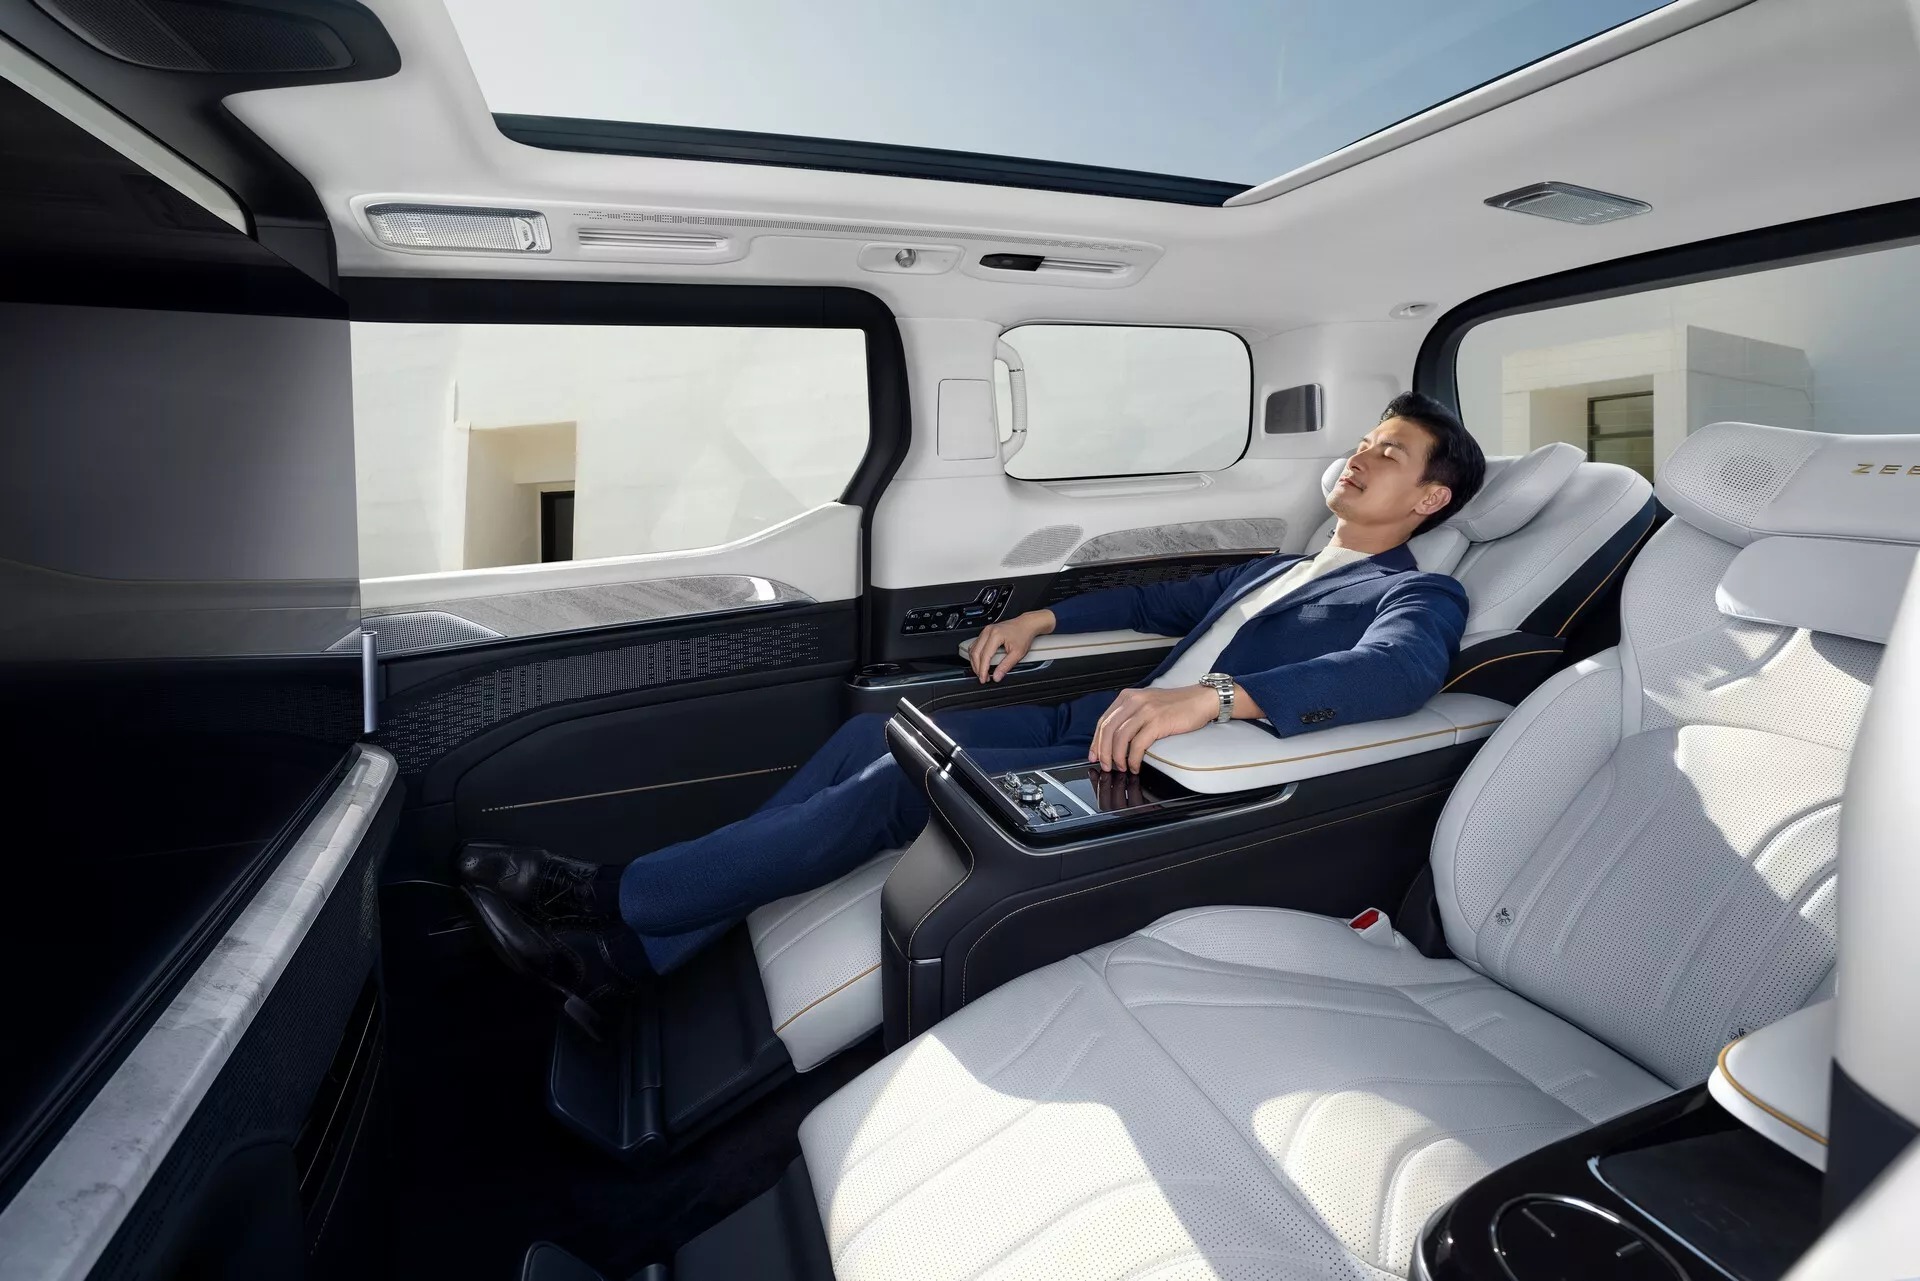 Zeekr 009 Grand ra mắt: Giá quy đổi gần 2,8 tỷ, chung gầm Volvo EM90, có TV 43inch, tủ lạnh, ghế massage như ở nhà - ảnh 15